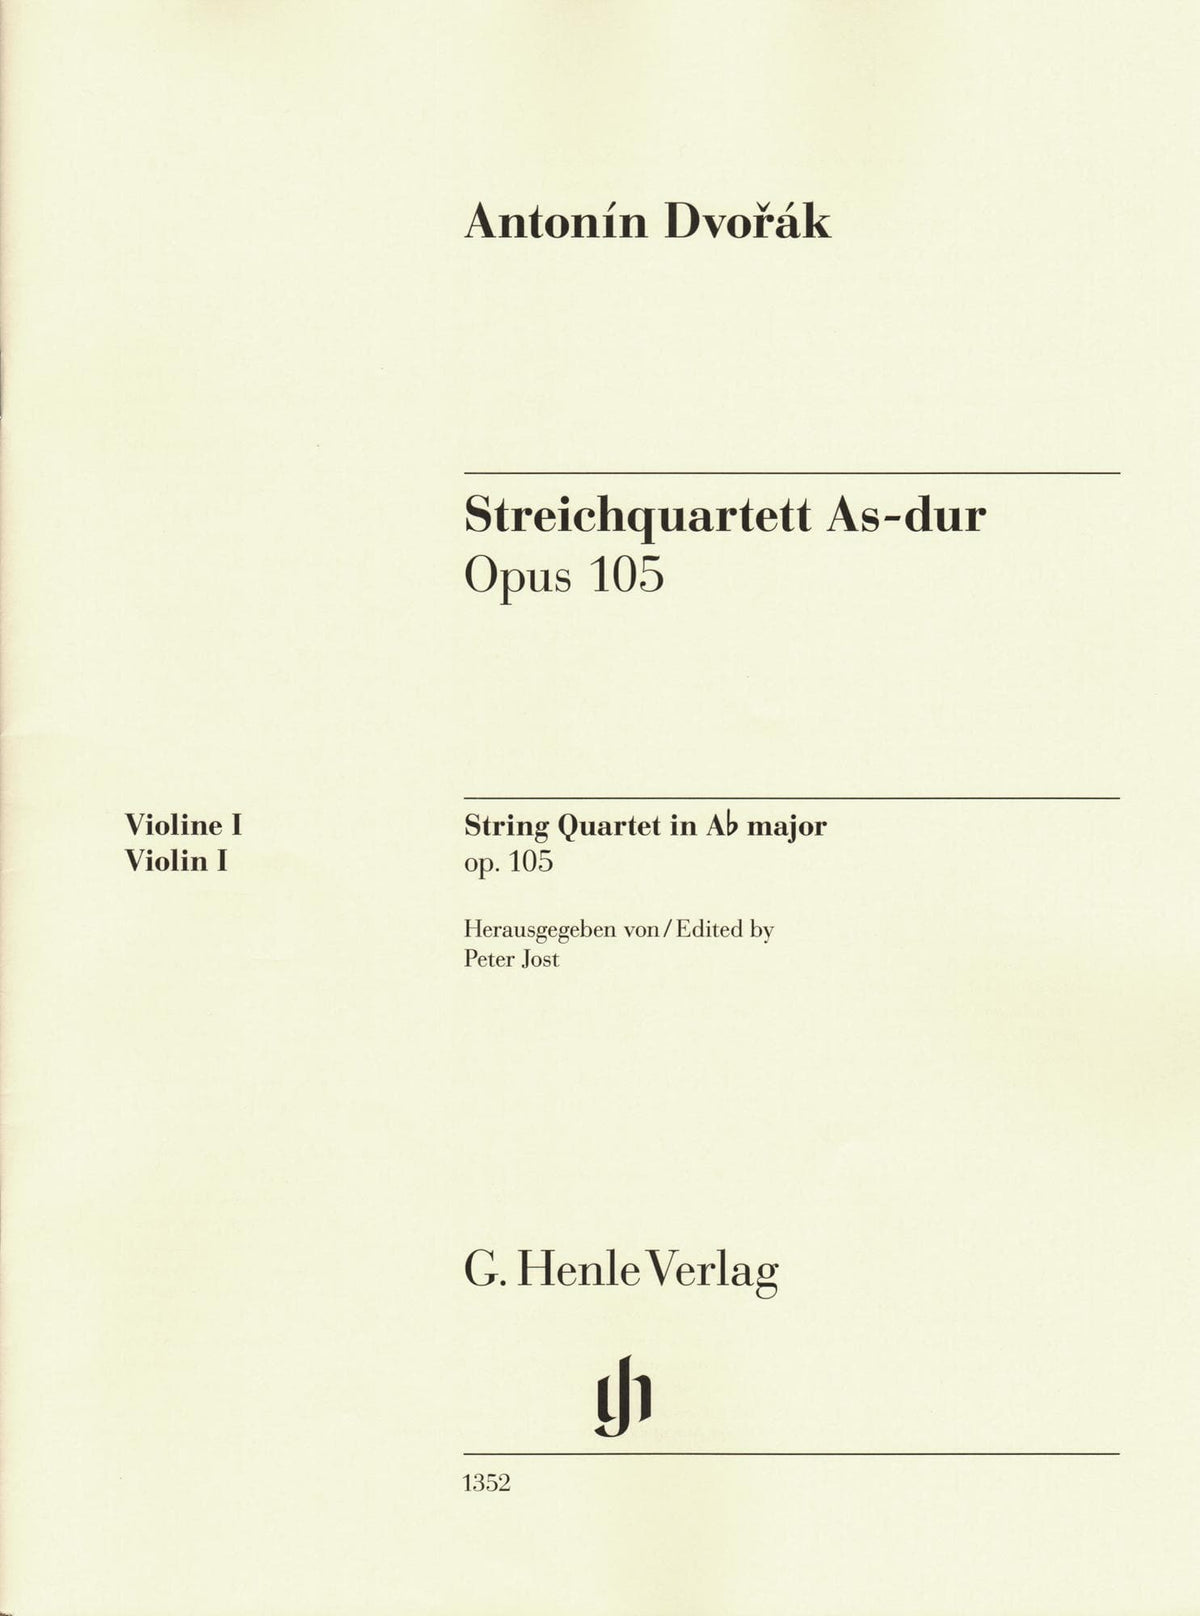 Dvorak, Antonin - String Quartet in A-flat major, op. 105 - for String Quartet - G. Henle Verlag URTEXT